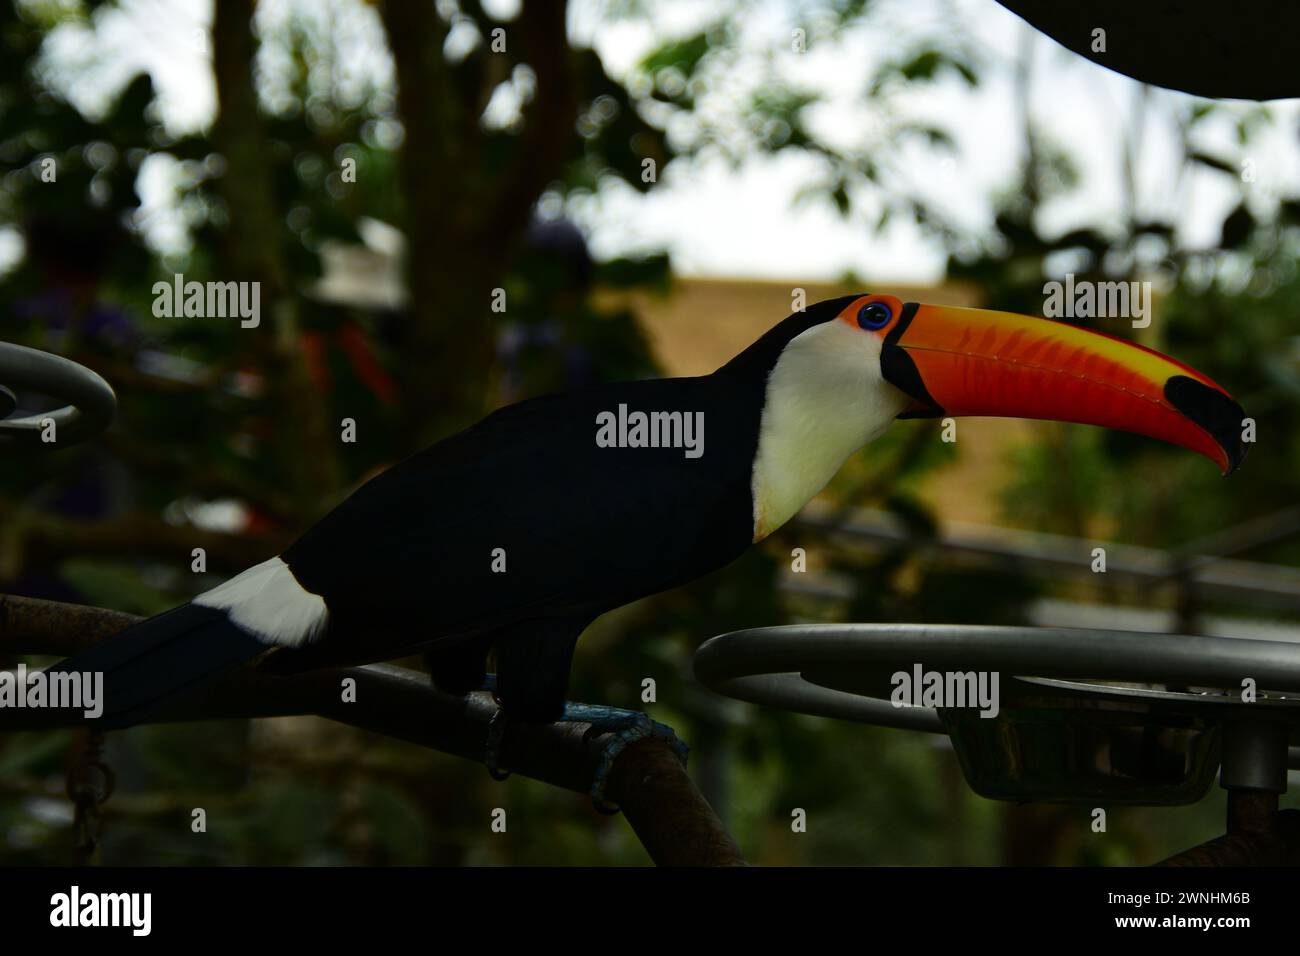 Ritratto di un Toucan. I toucani sono membri neotropicali della famiglia degli uccelli passeri vicini Ramphastidae. Foto Stock